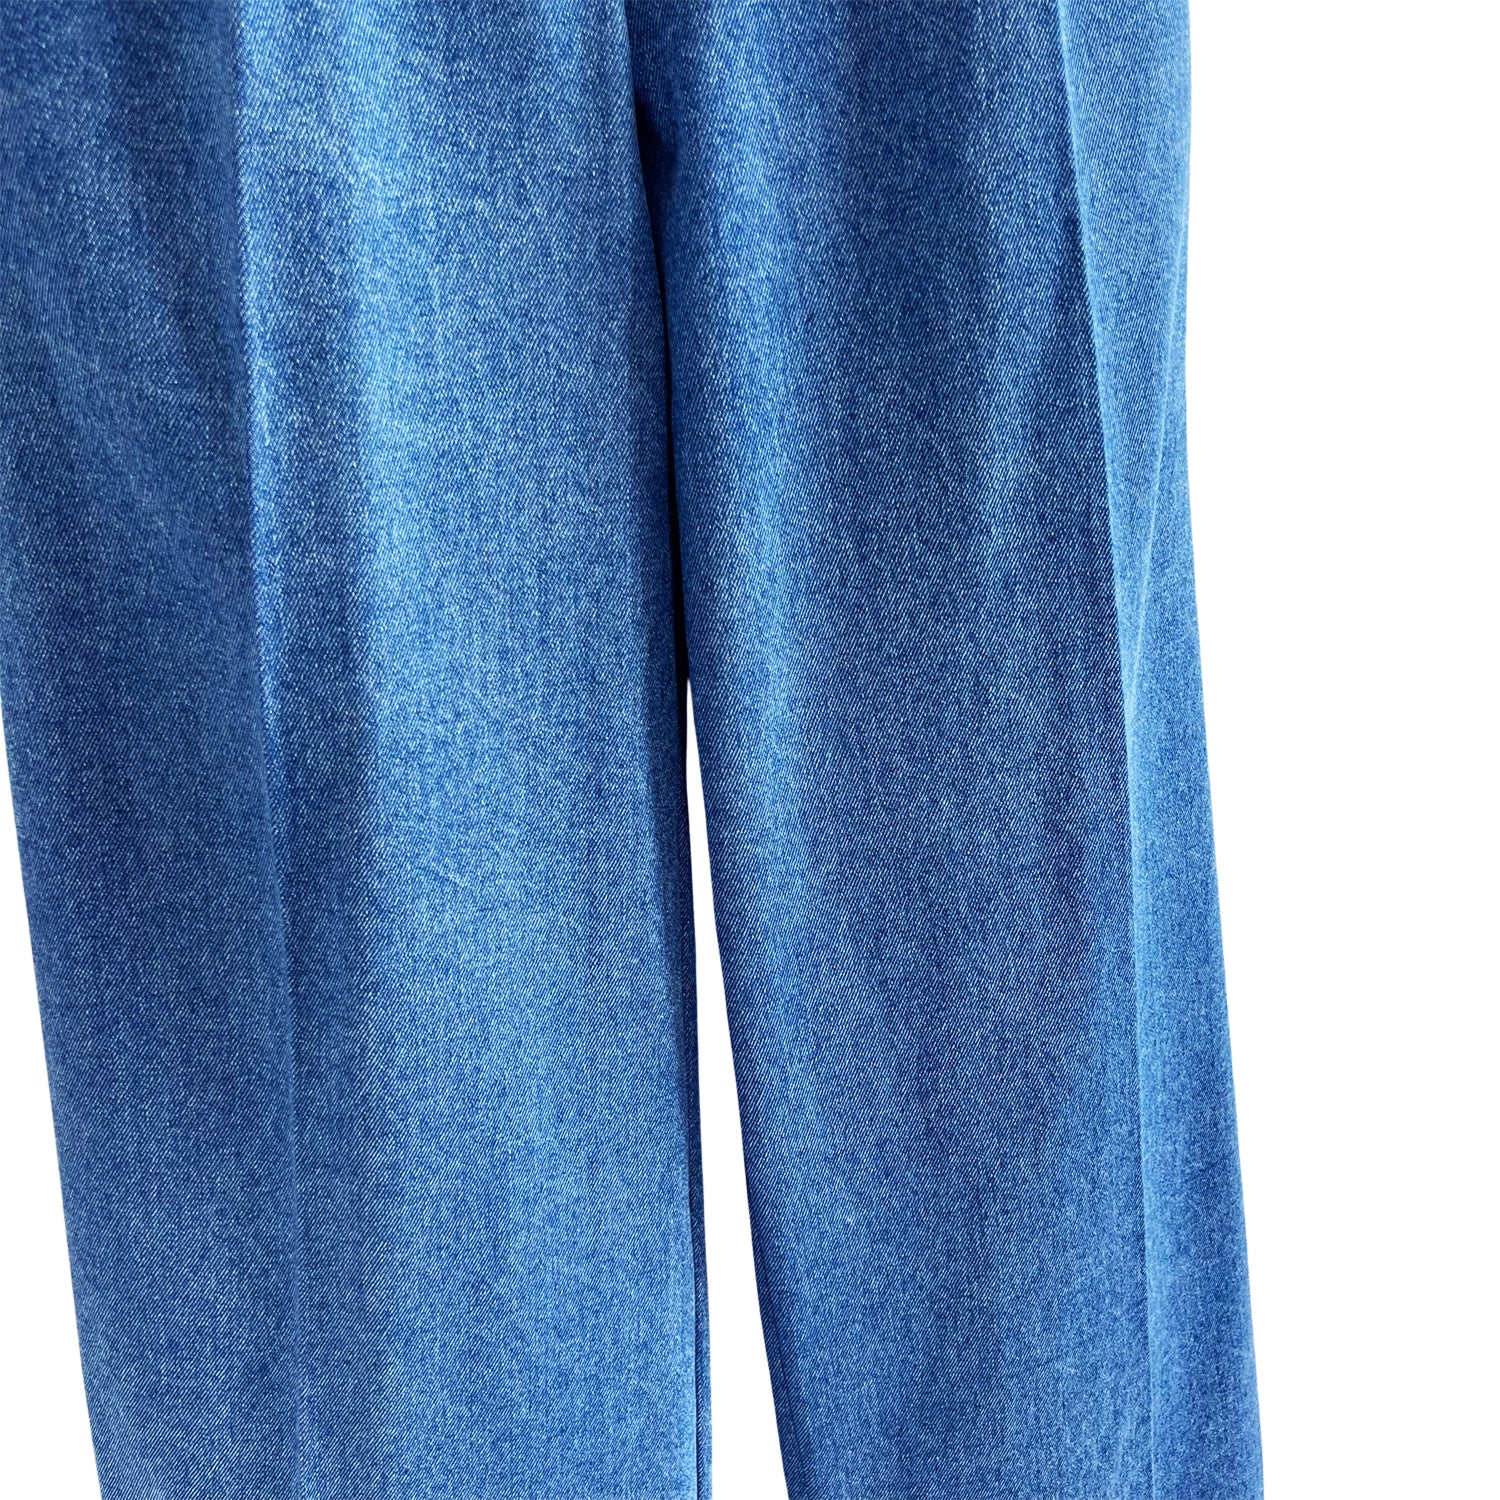 Wide-Leg Pants in Blue Denim